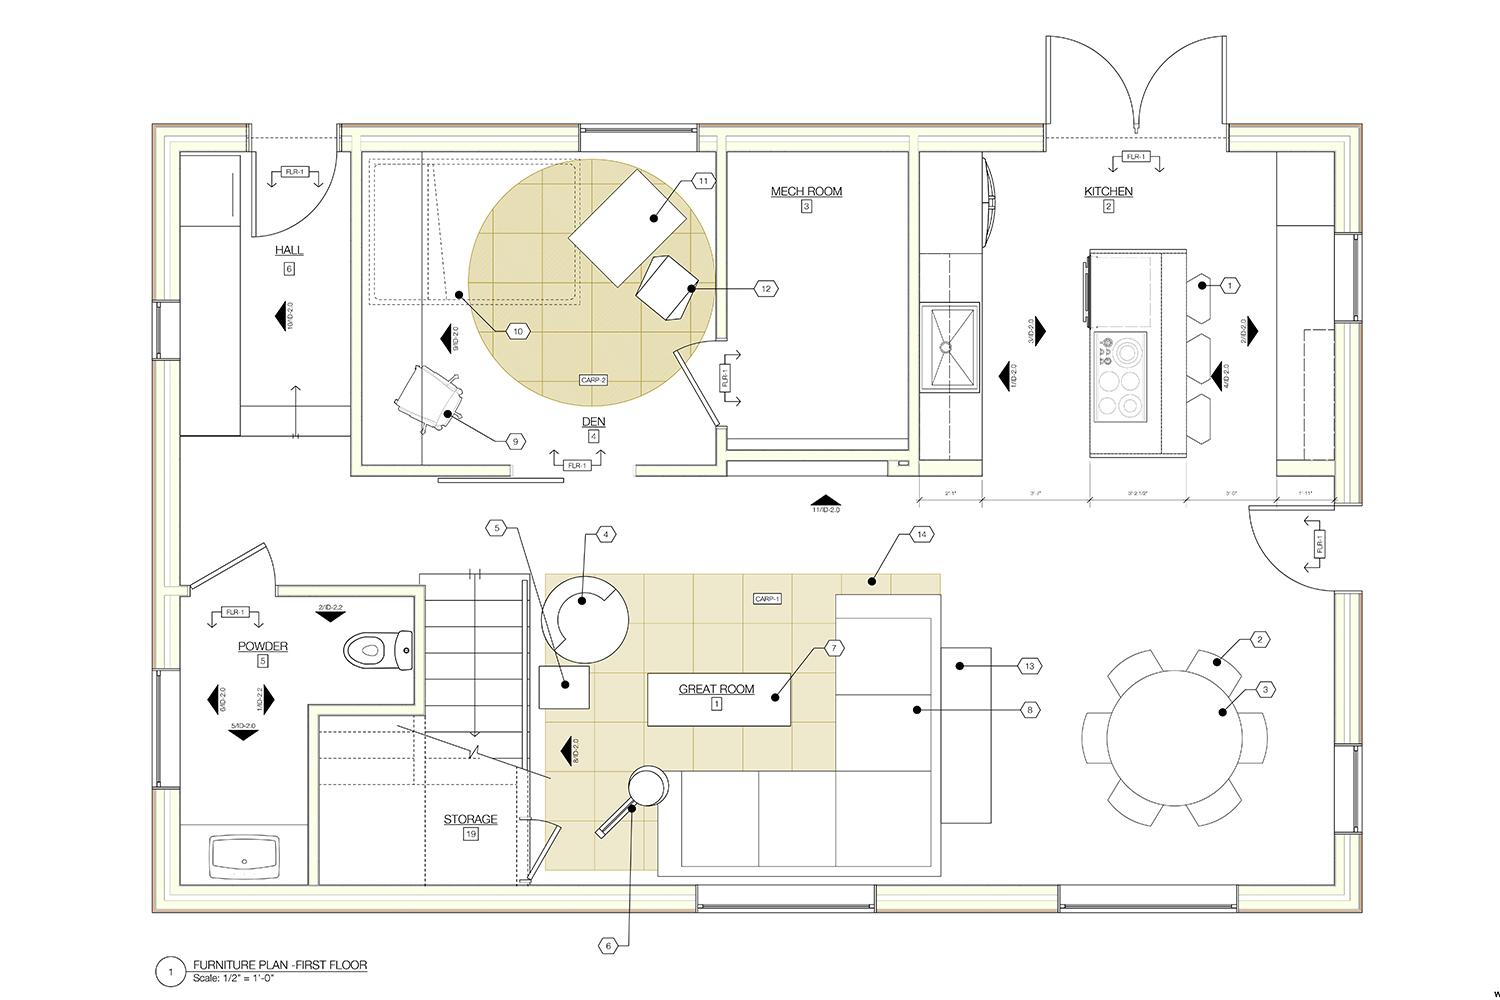 honda smart home inside us interior design plans 1